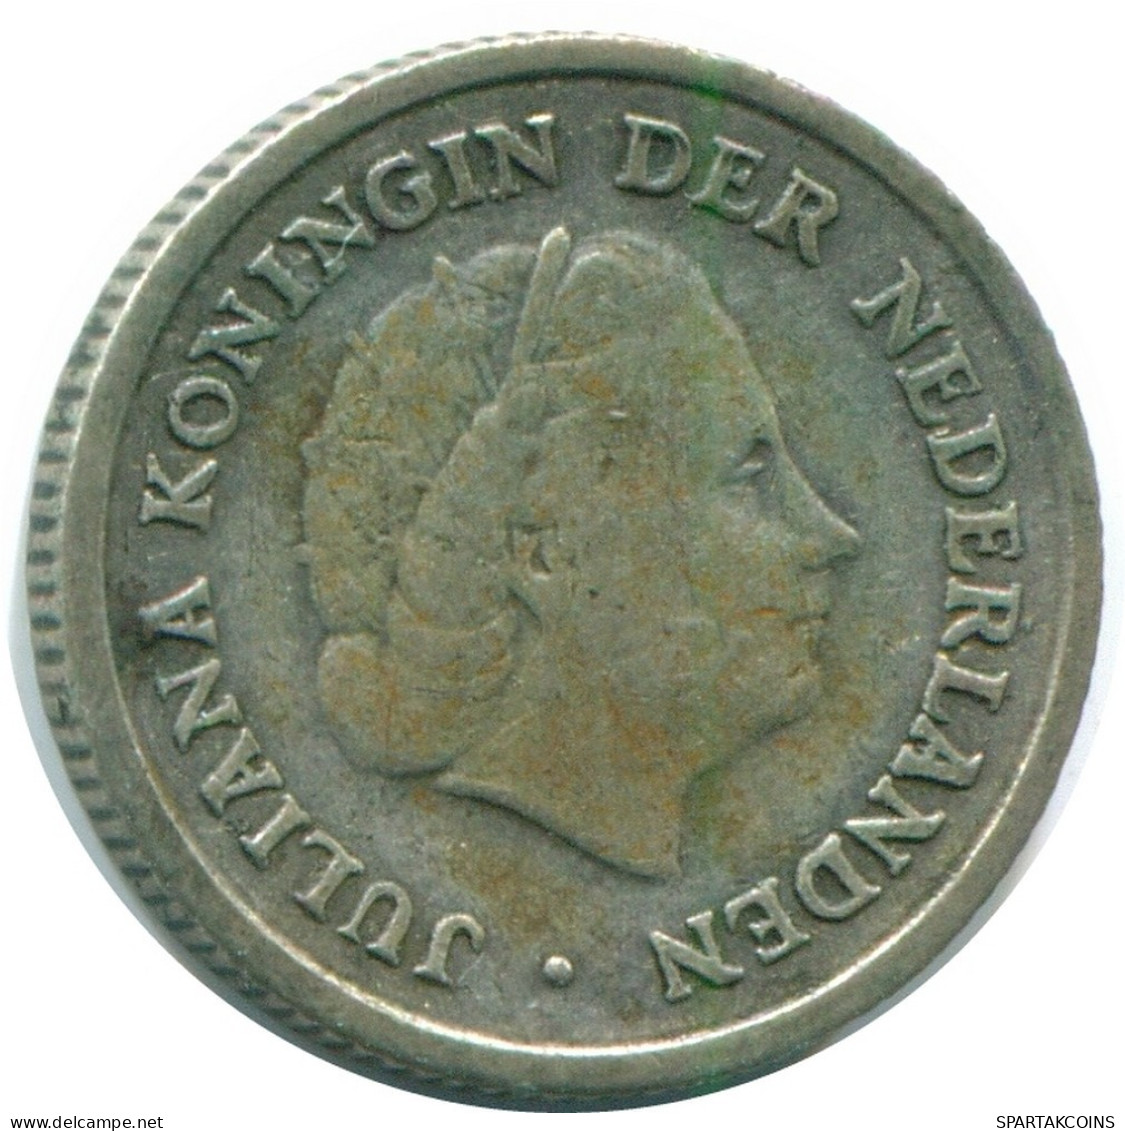 1/10 GULDEN 1956 NIEDERLÄNDISCHE ANTILLEN SILBER Koloniale Münze #NL12128.3.D.A - Niederländische Antillen